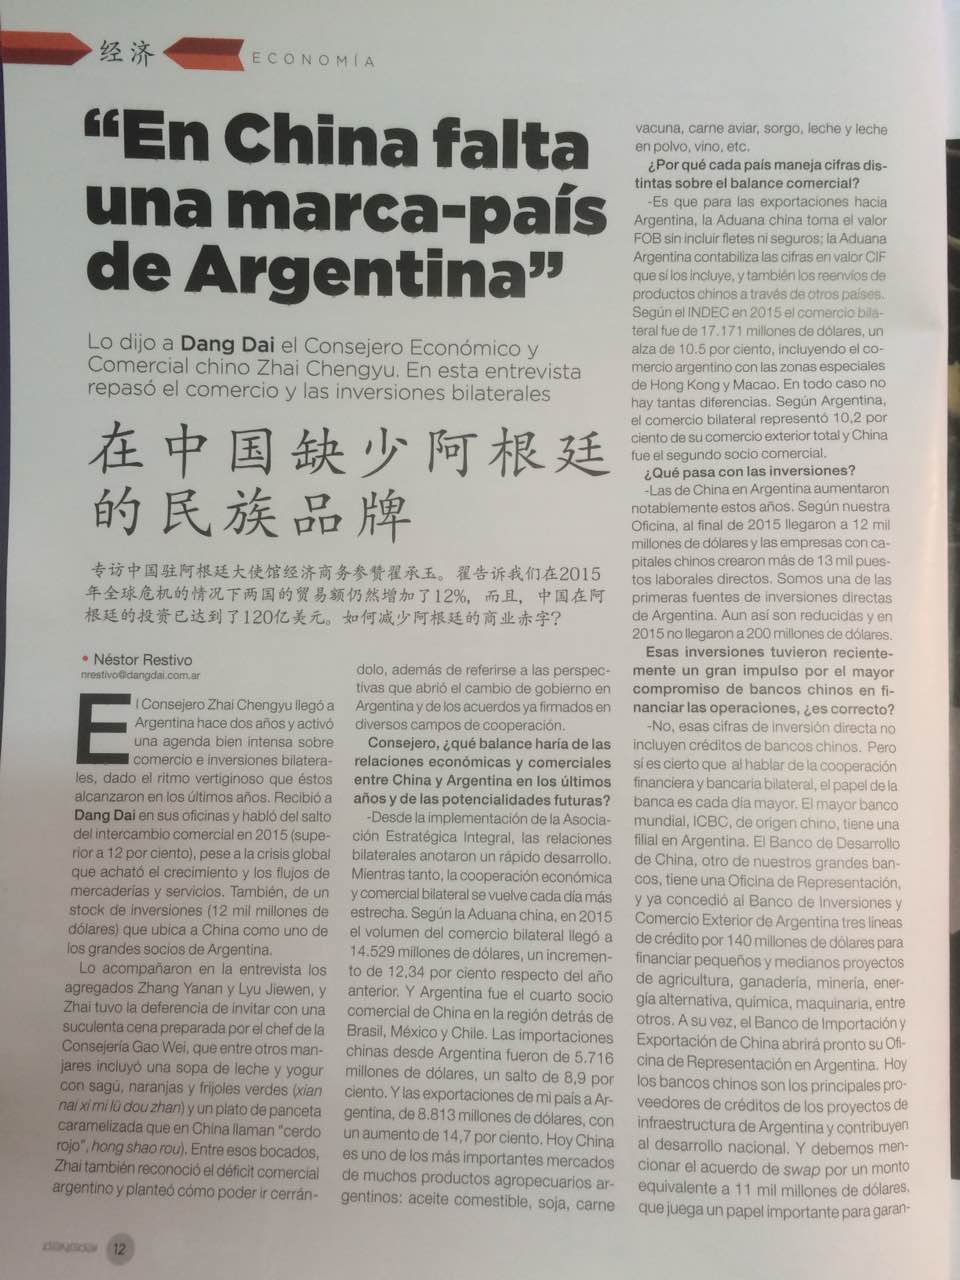 阿根廷《当代》杂志刊登对翟承玉参赞的采访